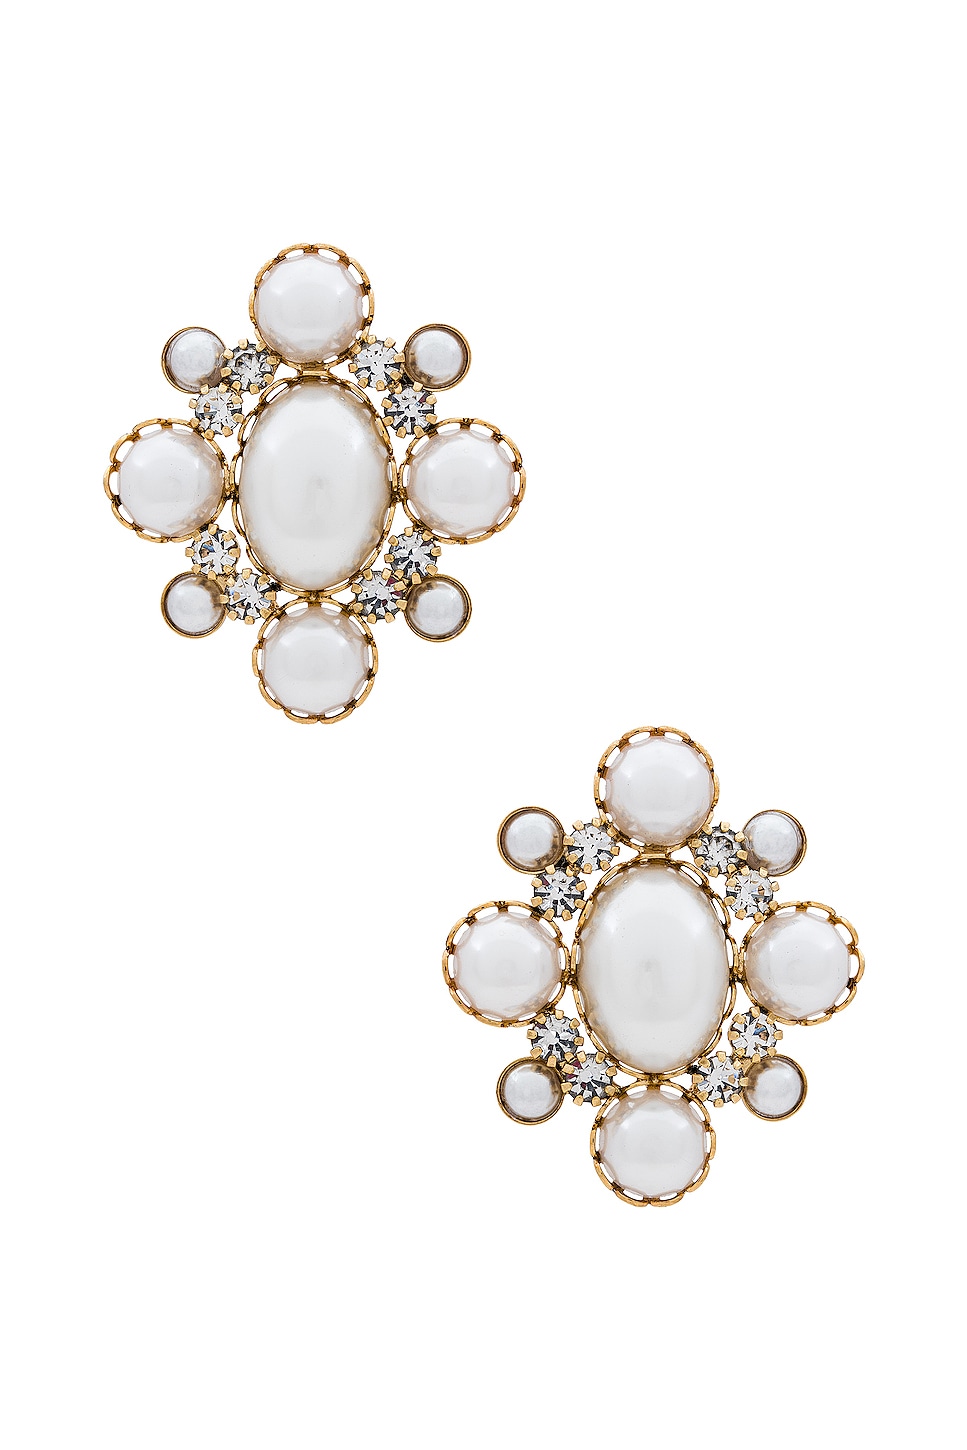 Kate Spade Pearl Statement Earrings - Jewelry